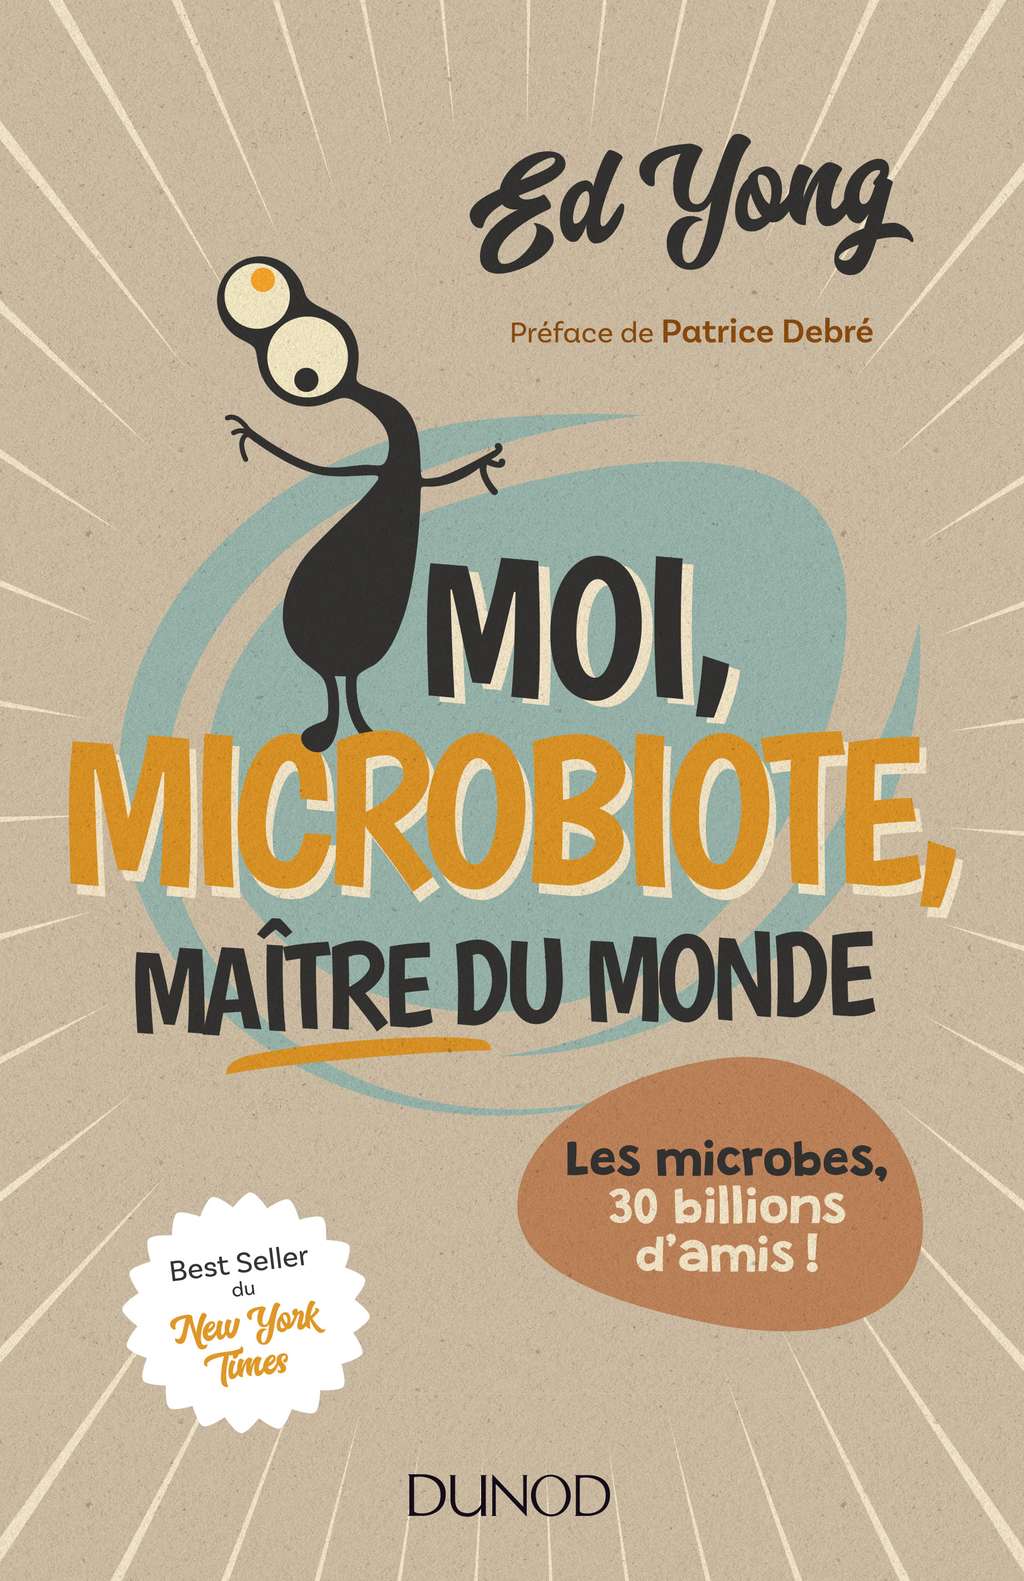 Découvrez le livre <em><a title="Moi, microbiote, maître du monde - Les microbes, 30 billions d'amis" target="_blank" href="http://www.dunod.com/sciences-techniques/culture-scientifique/sciences-de-la-vie-de-la-terre-et-de-lenvironnement/moi-microbiote-maitre-du-mo">Moi, microbiote, maître du monde</a></em>, paru aux <a title="Les éditions Dunod" target="_blank" href="http://www.dunod.com/">éditions Dunod</a>. © Dunod